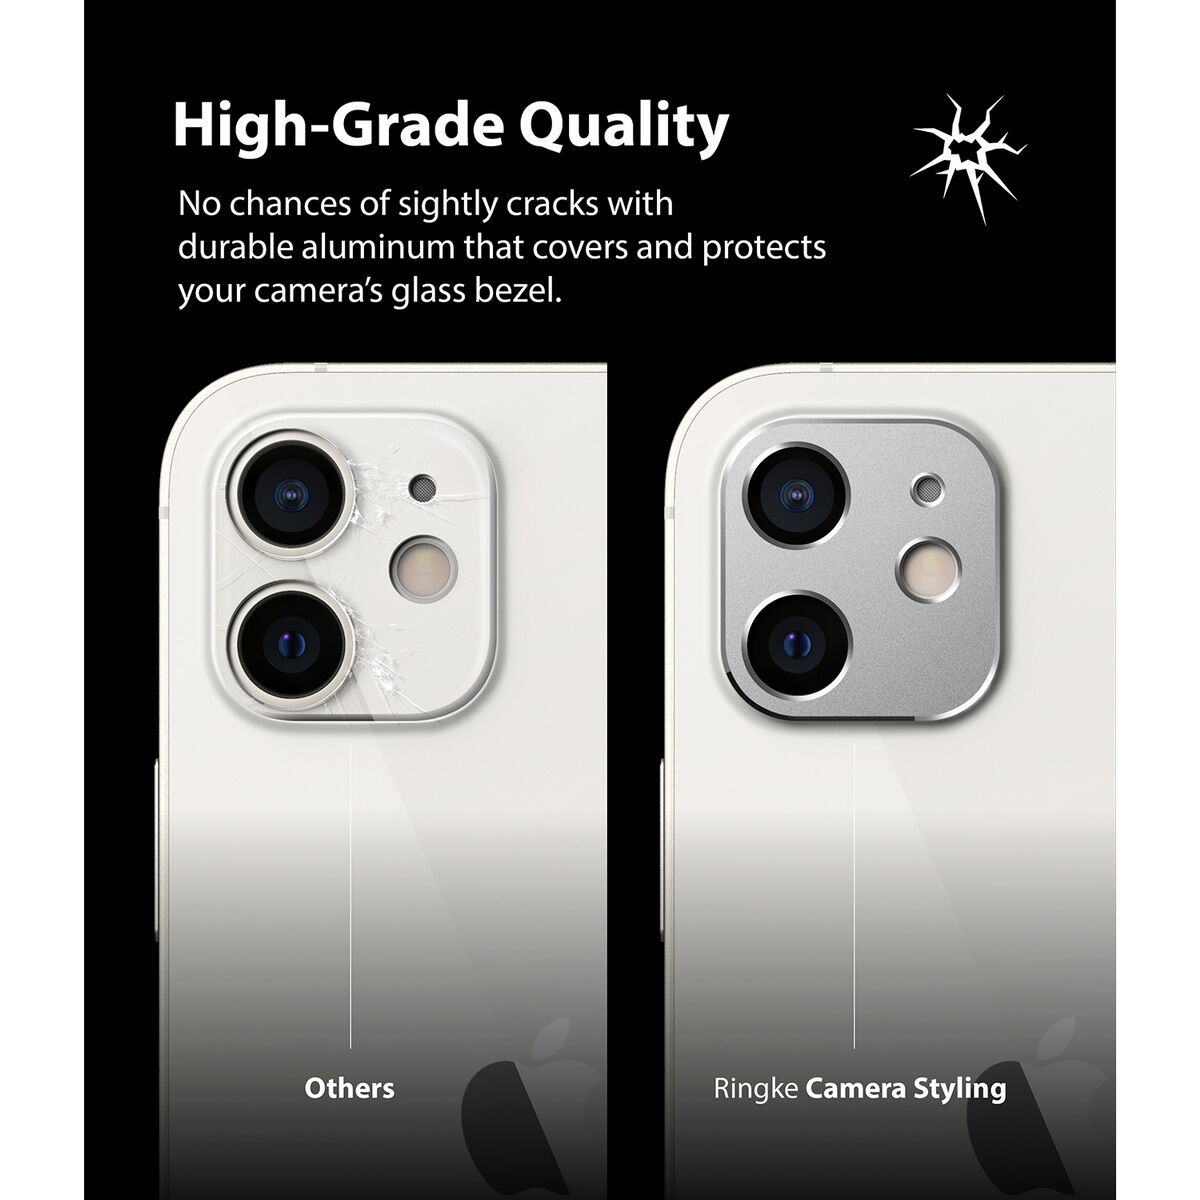 Ringke iPhone 12 mini, Camera Styling, kamera sziget védő keret, Ezüst